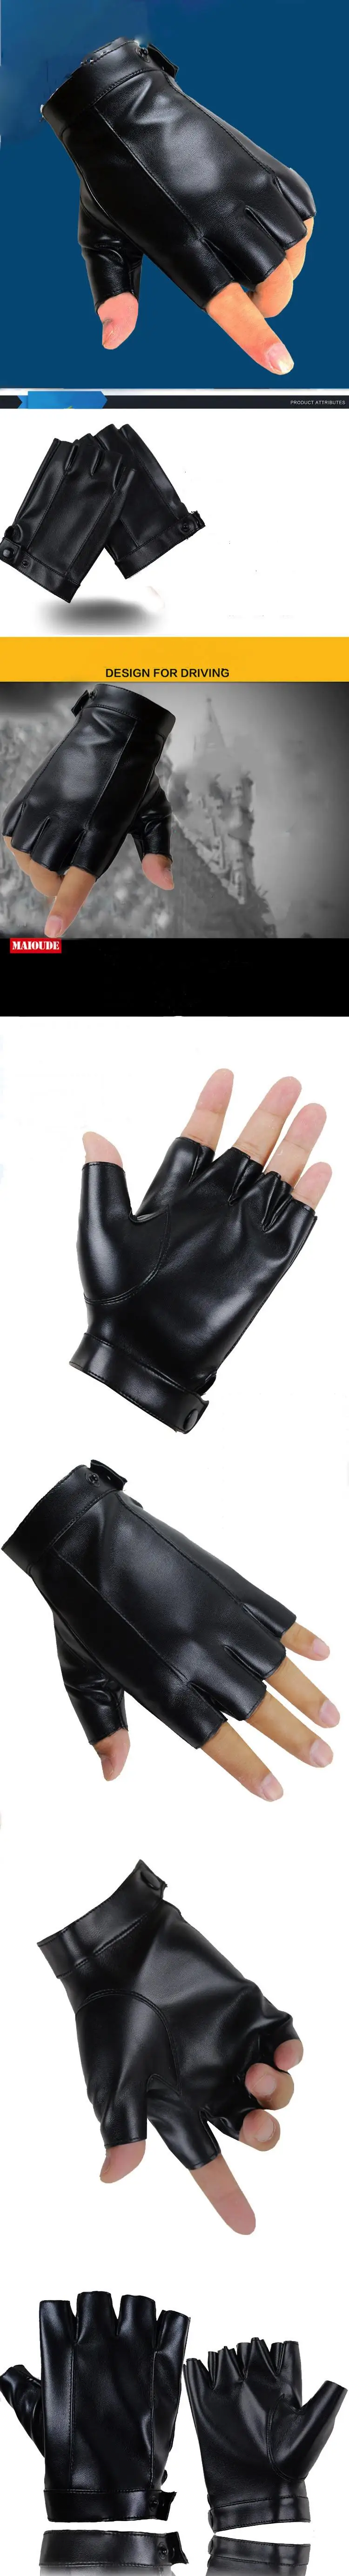 Longkeader модные перчатки с открытыми пальцами для мужчин и женщин из искусственной кожи без пальцев перчатки черные удобные перчатки для вождения Eldiven Guantes